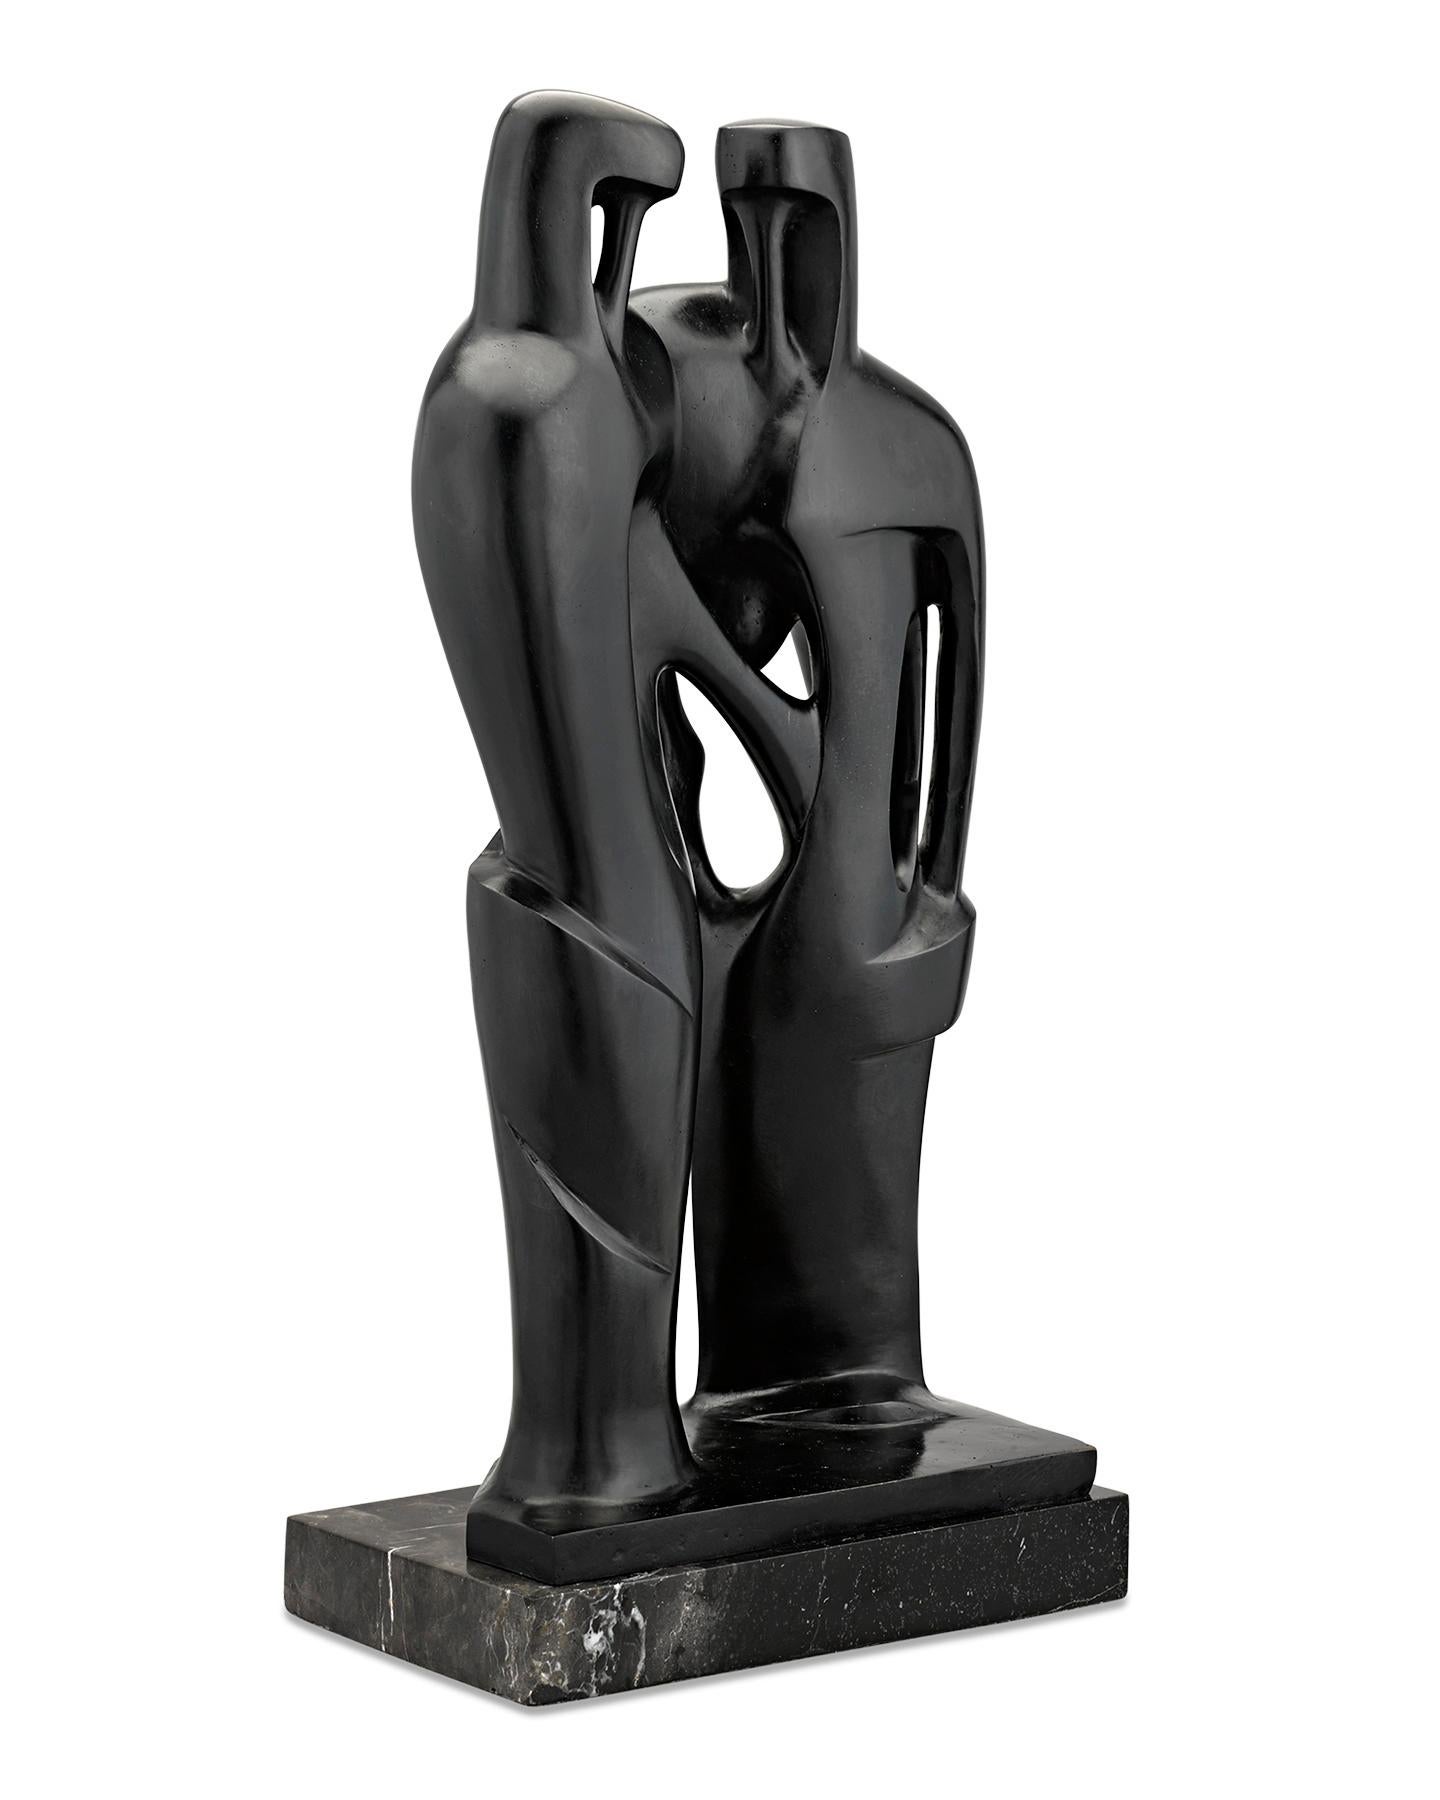 Couple - Modern Sculpture by Agustín Cárdenas